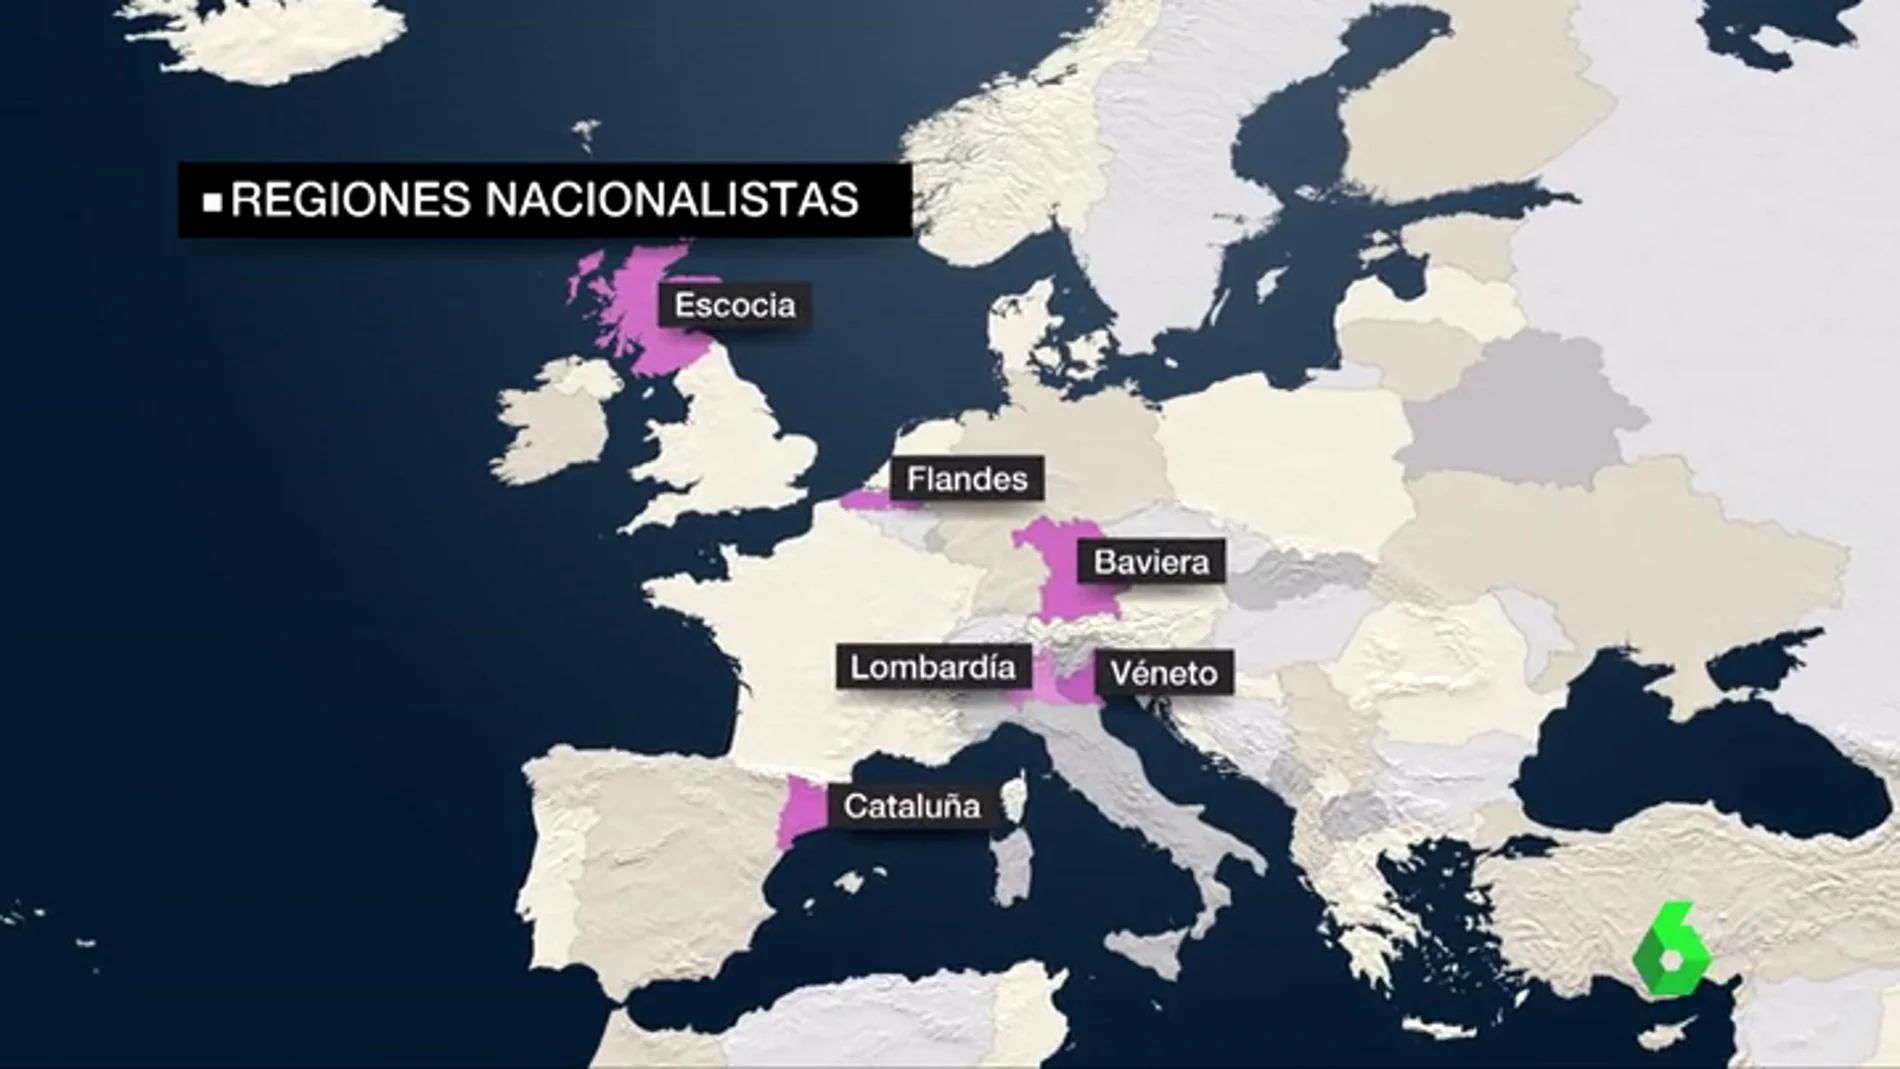 Son varias las regiones europeas con reivindicaciones nacionalistas